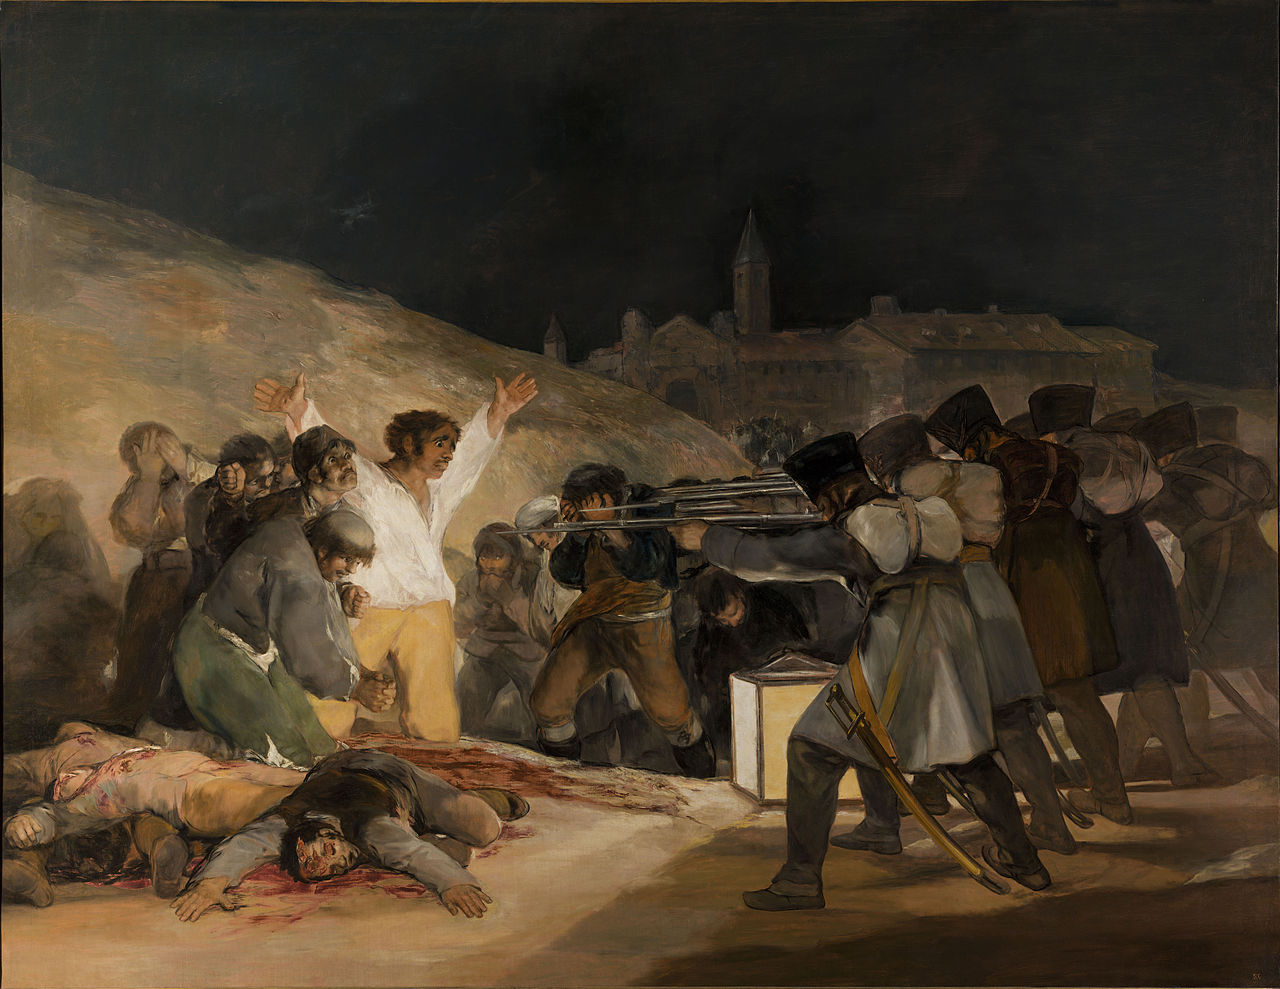 الثالث من أيار عام 1808 by Francisco Goya - 1814 - 268 cm × 347 cm 